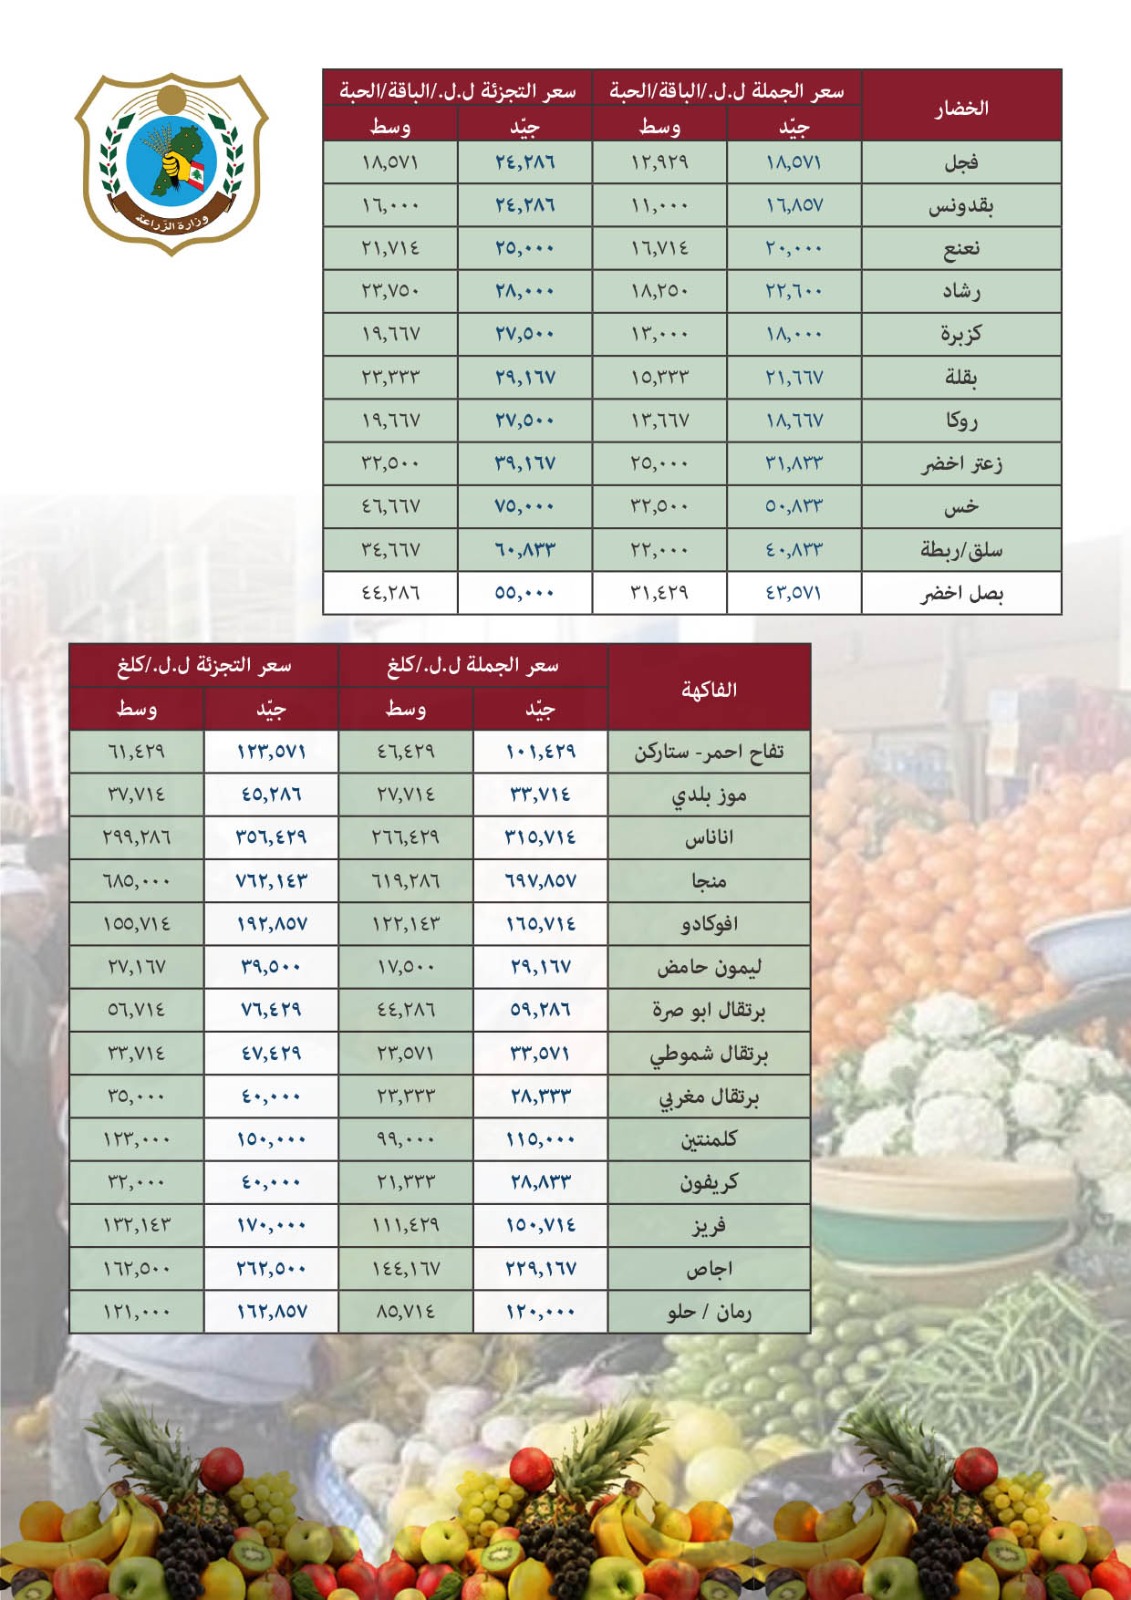 وزارة الزراعة تتابع نشر متوسط أسعار الجملة والتجزئة للحوم والخضر والفاكهة